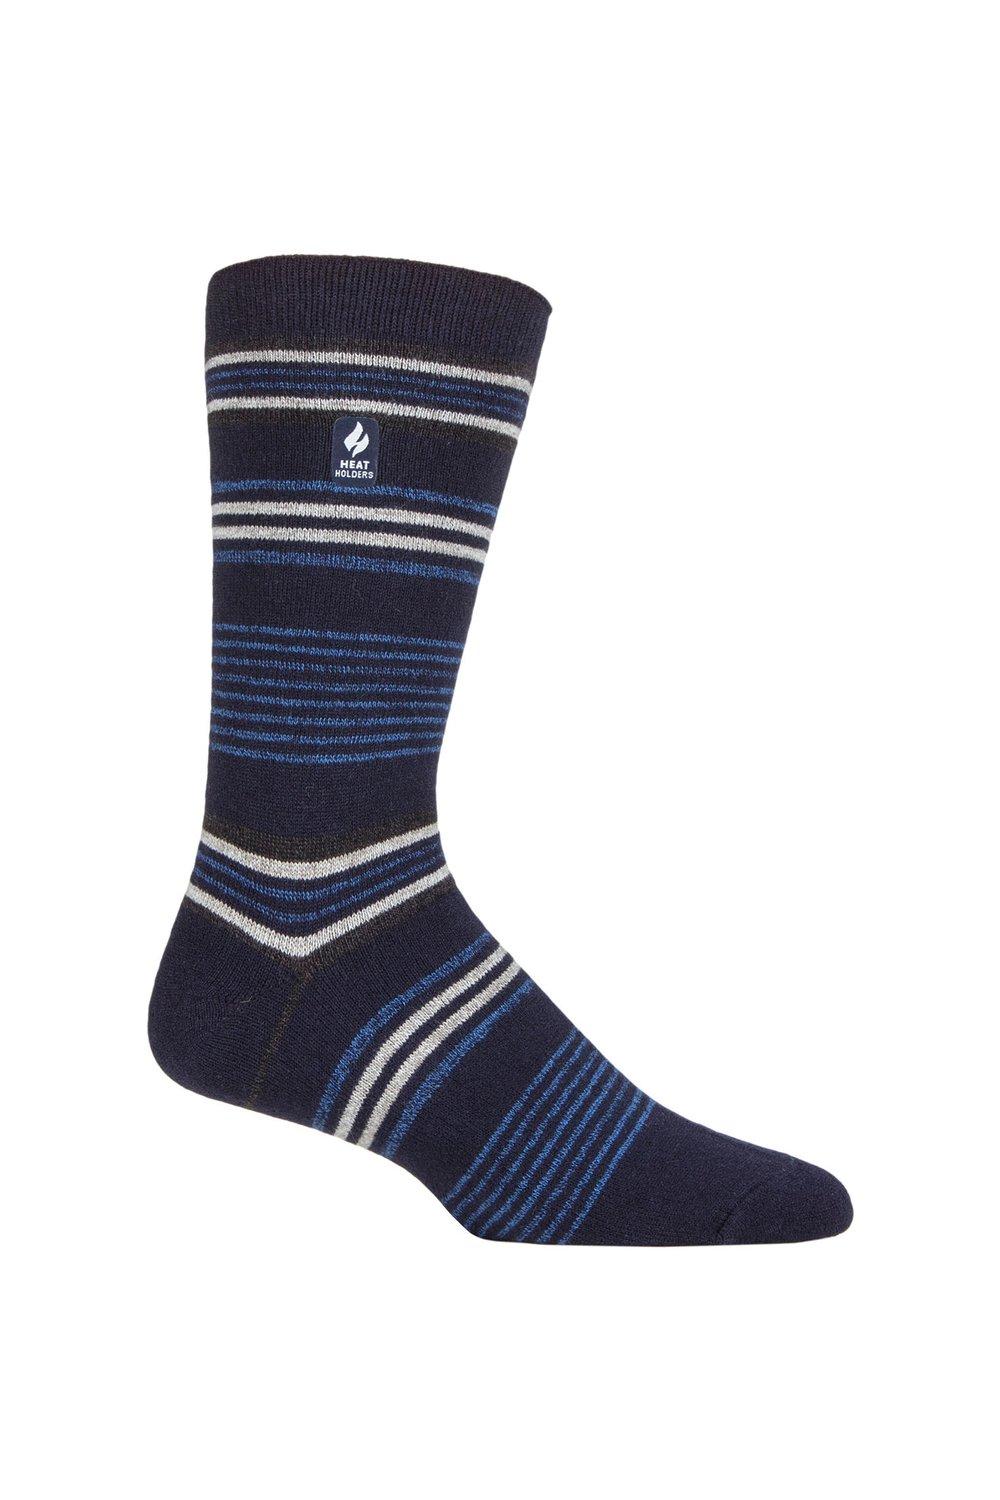 1 пара носков в полоску, аргайл и с рисунком 1.0 TOG Ultralite SOCKSHOP Heat Holders, синий